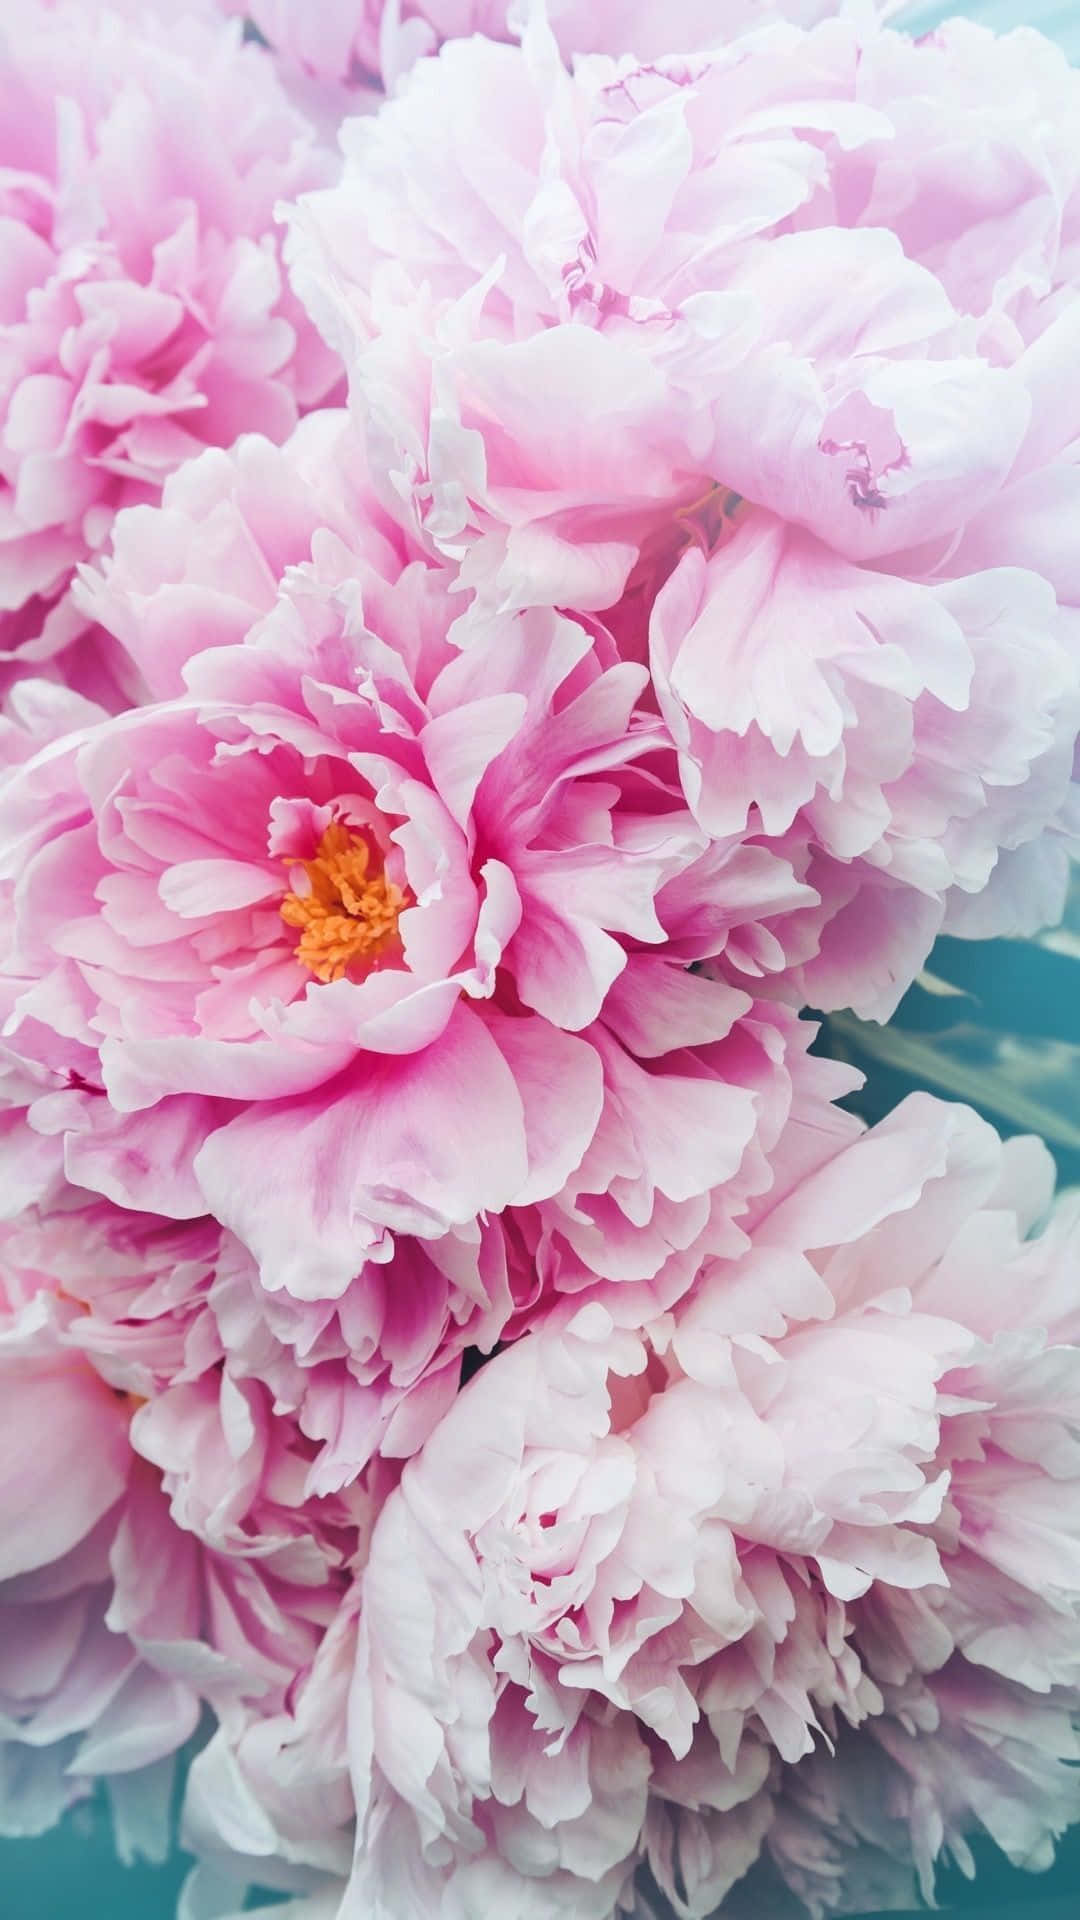 Unahermosa Flor De Peonía En Plena Floración En Un Iphone. Fondo de pantalla